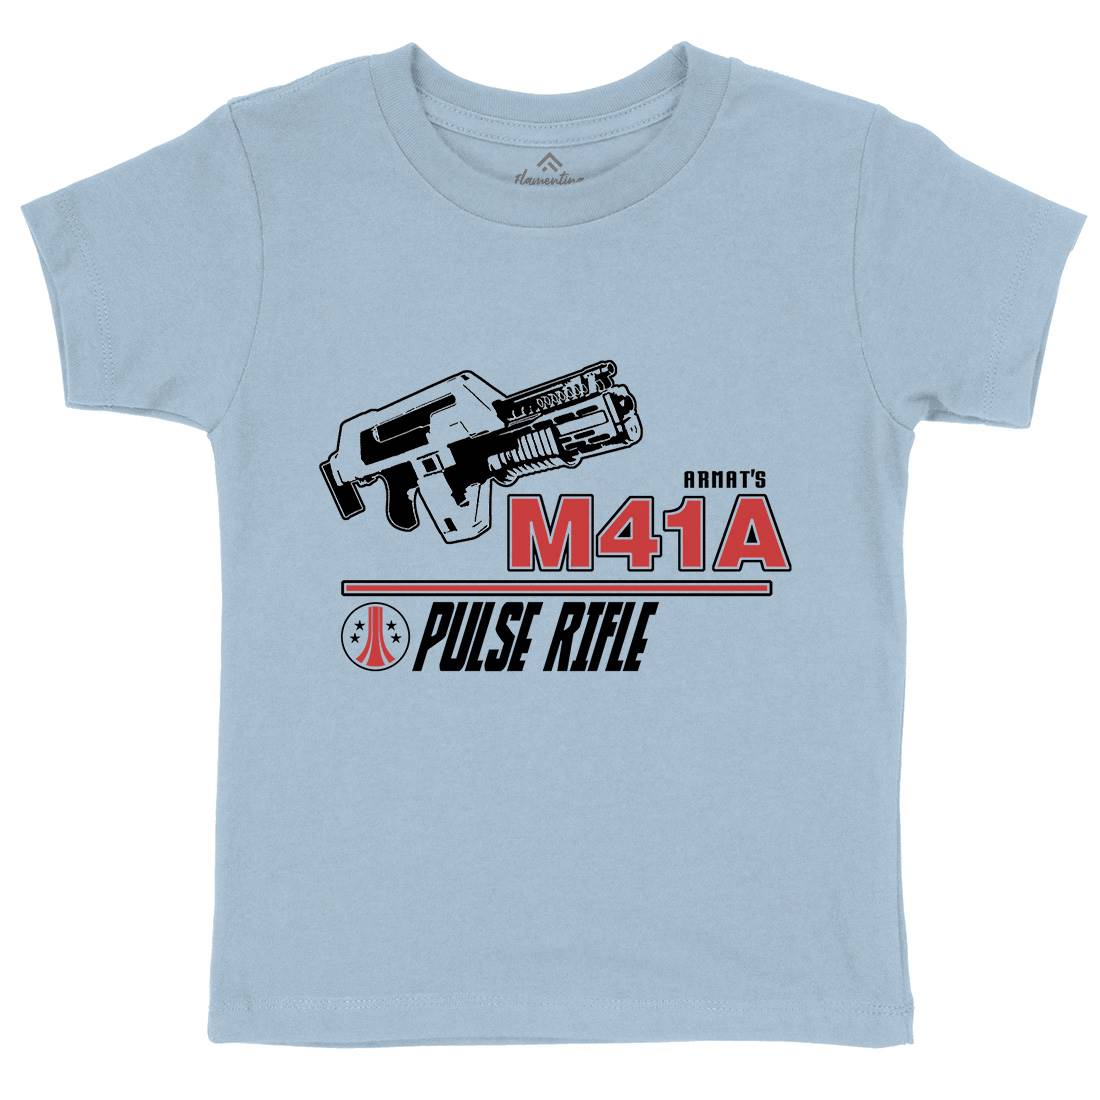 M41A Kids Crew Neck T-Shirt Army D153